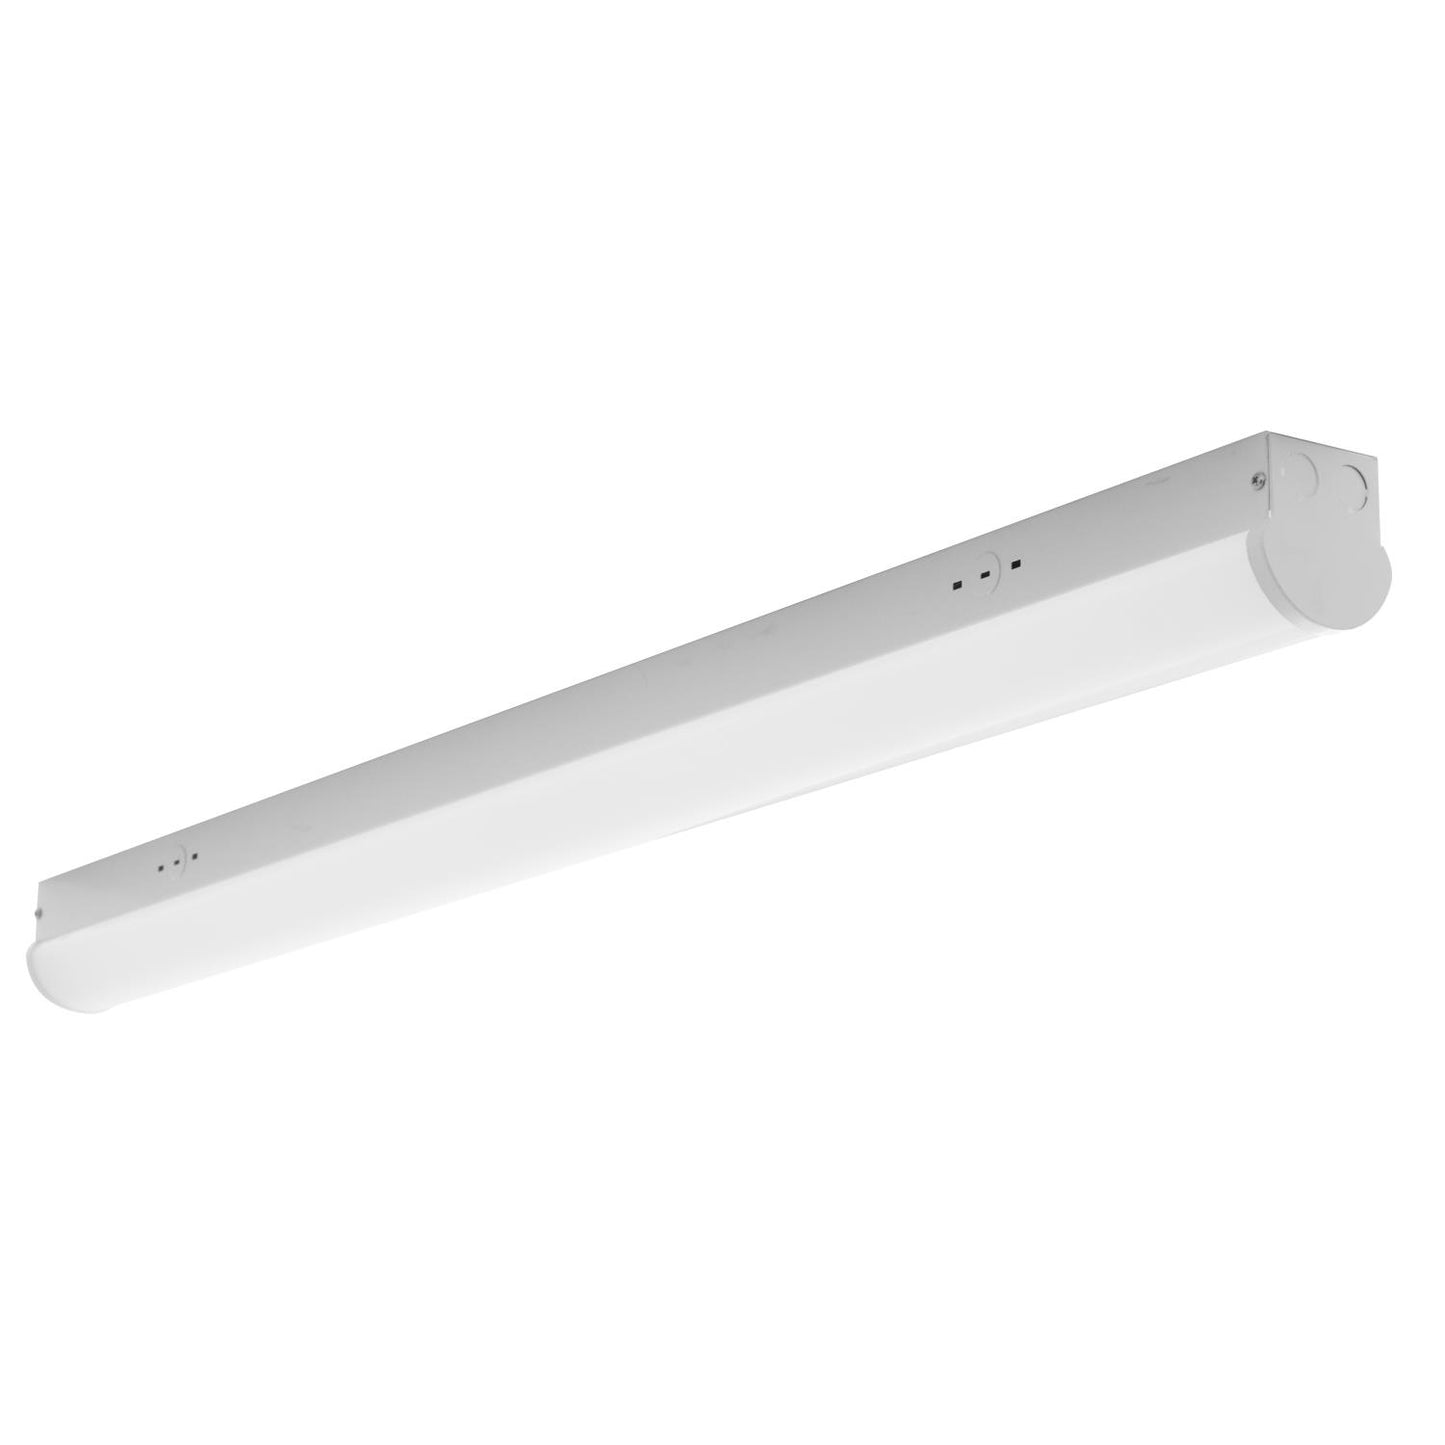 Sunlite 85361 4 ft. LED Garage Linear Wraparound Strip Lighting Fixture, Ceiling Flush Mount, 23 Watt, 5000K - Super White